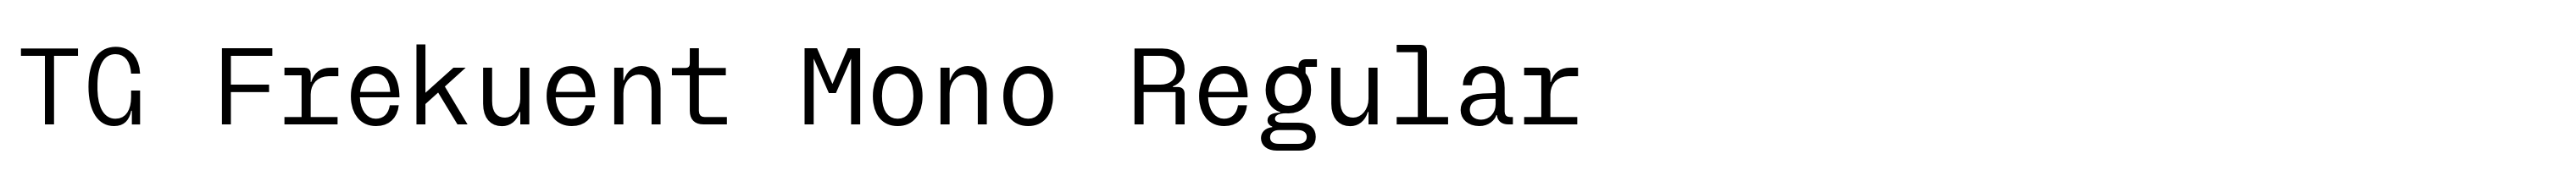 TG Frekuent Mono Regular